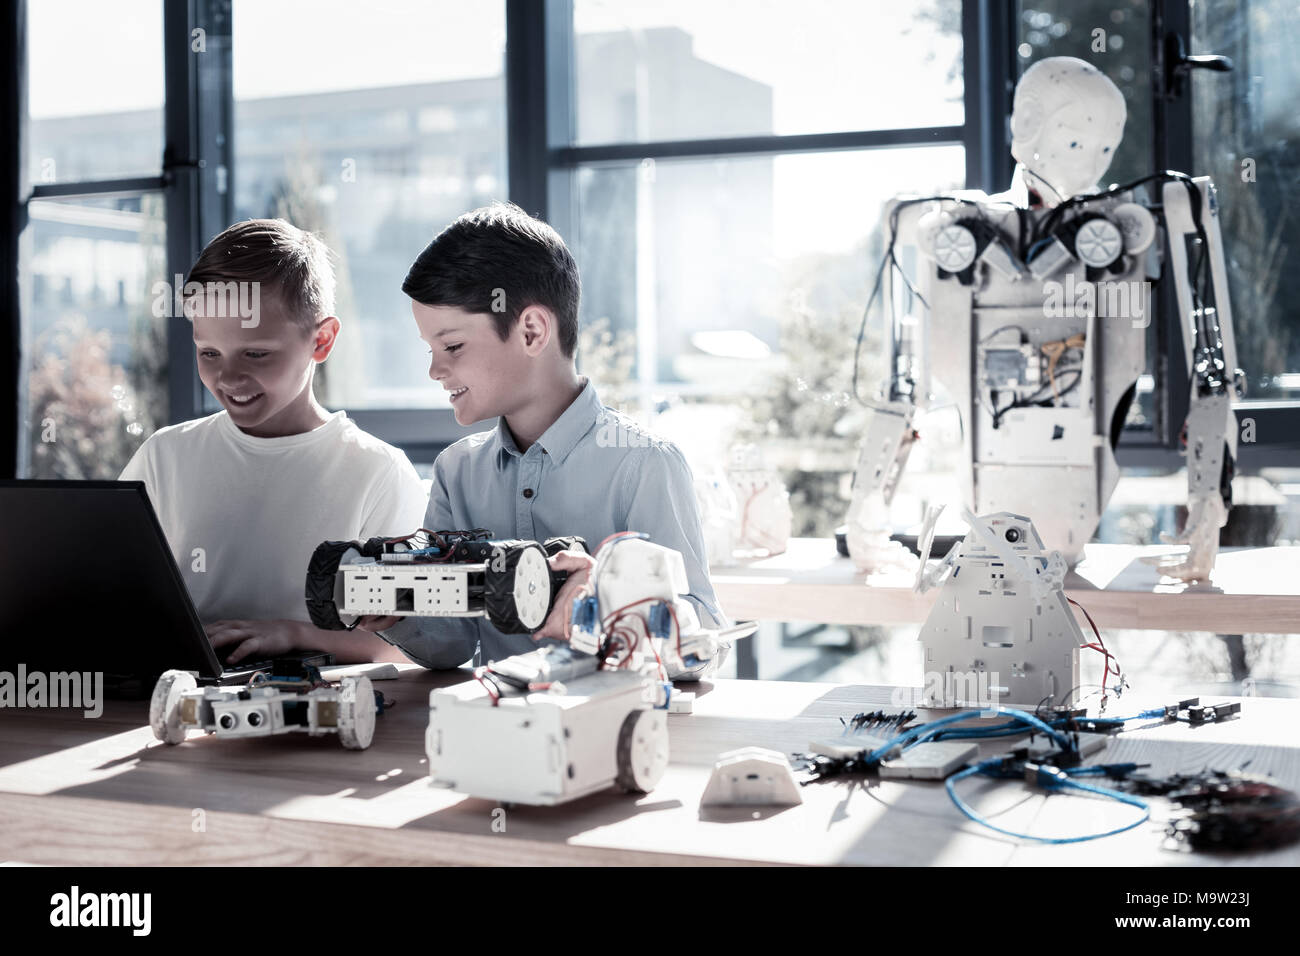 Frohe Kinder arbeiten in Werkstatt und programmieren Roboter Maschinen  Stockfotografie - Alamy